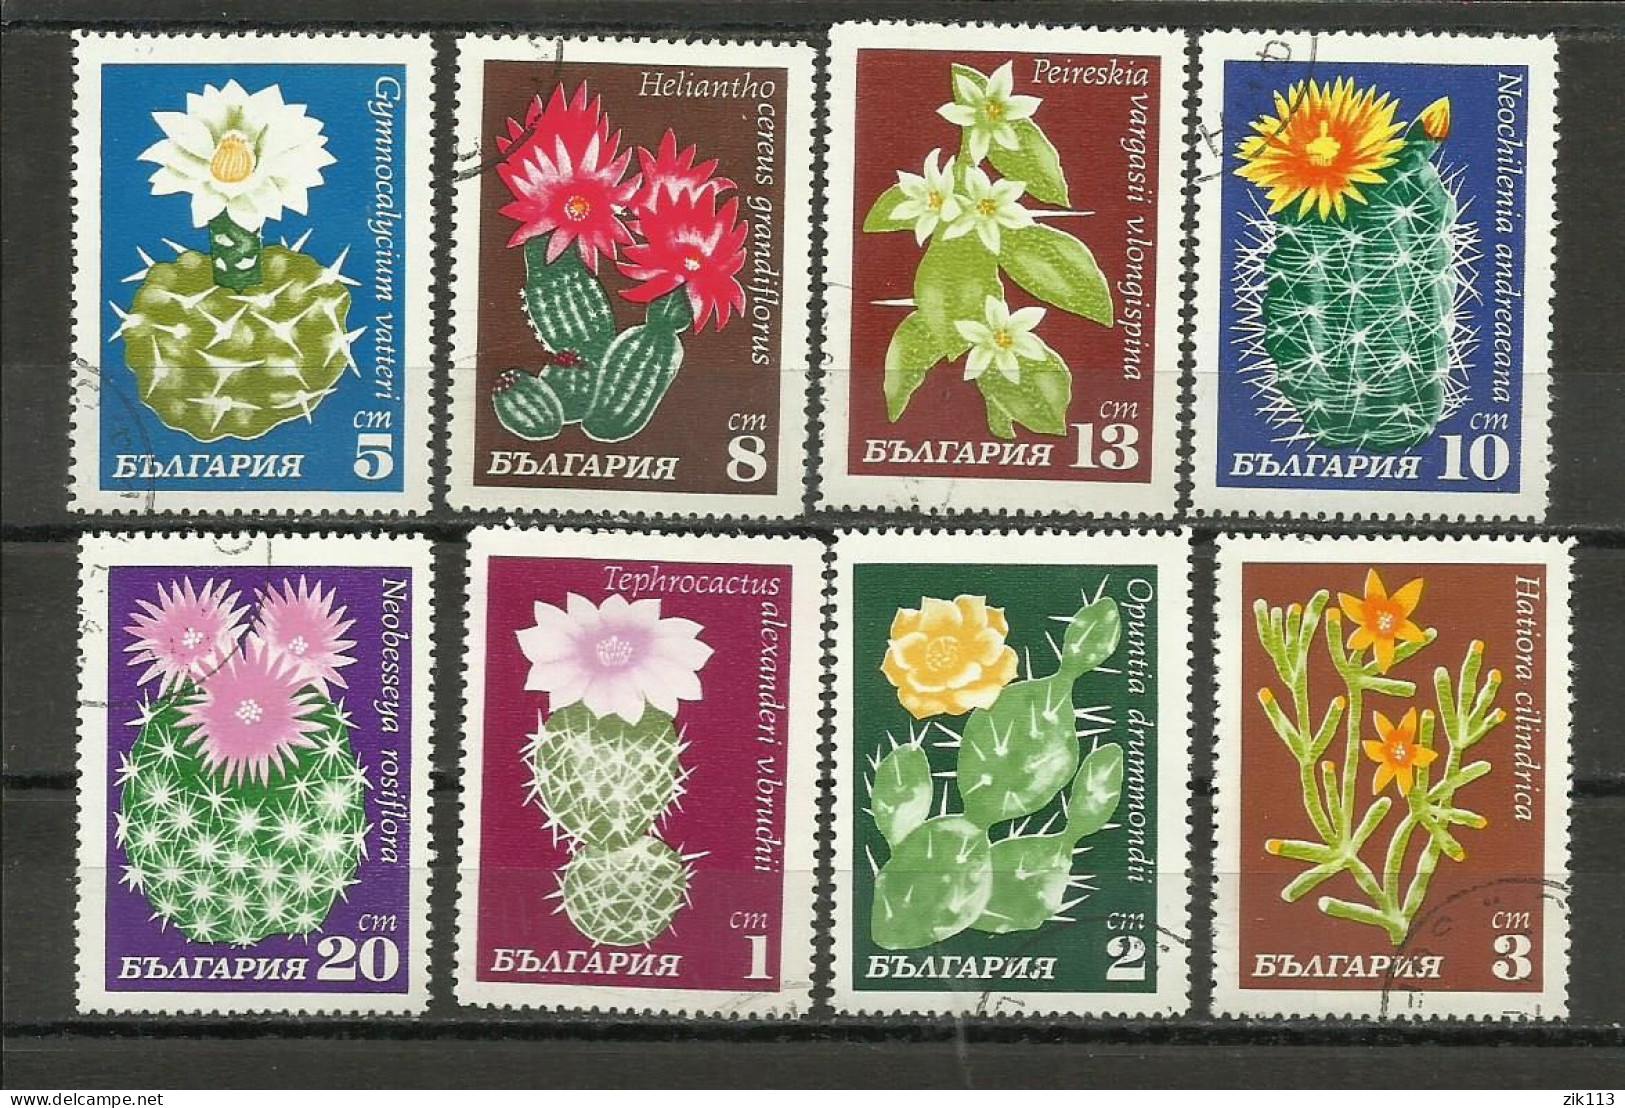 BULGARIA 1970 - CACTUSES, FLOWERS, USED - Usati